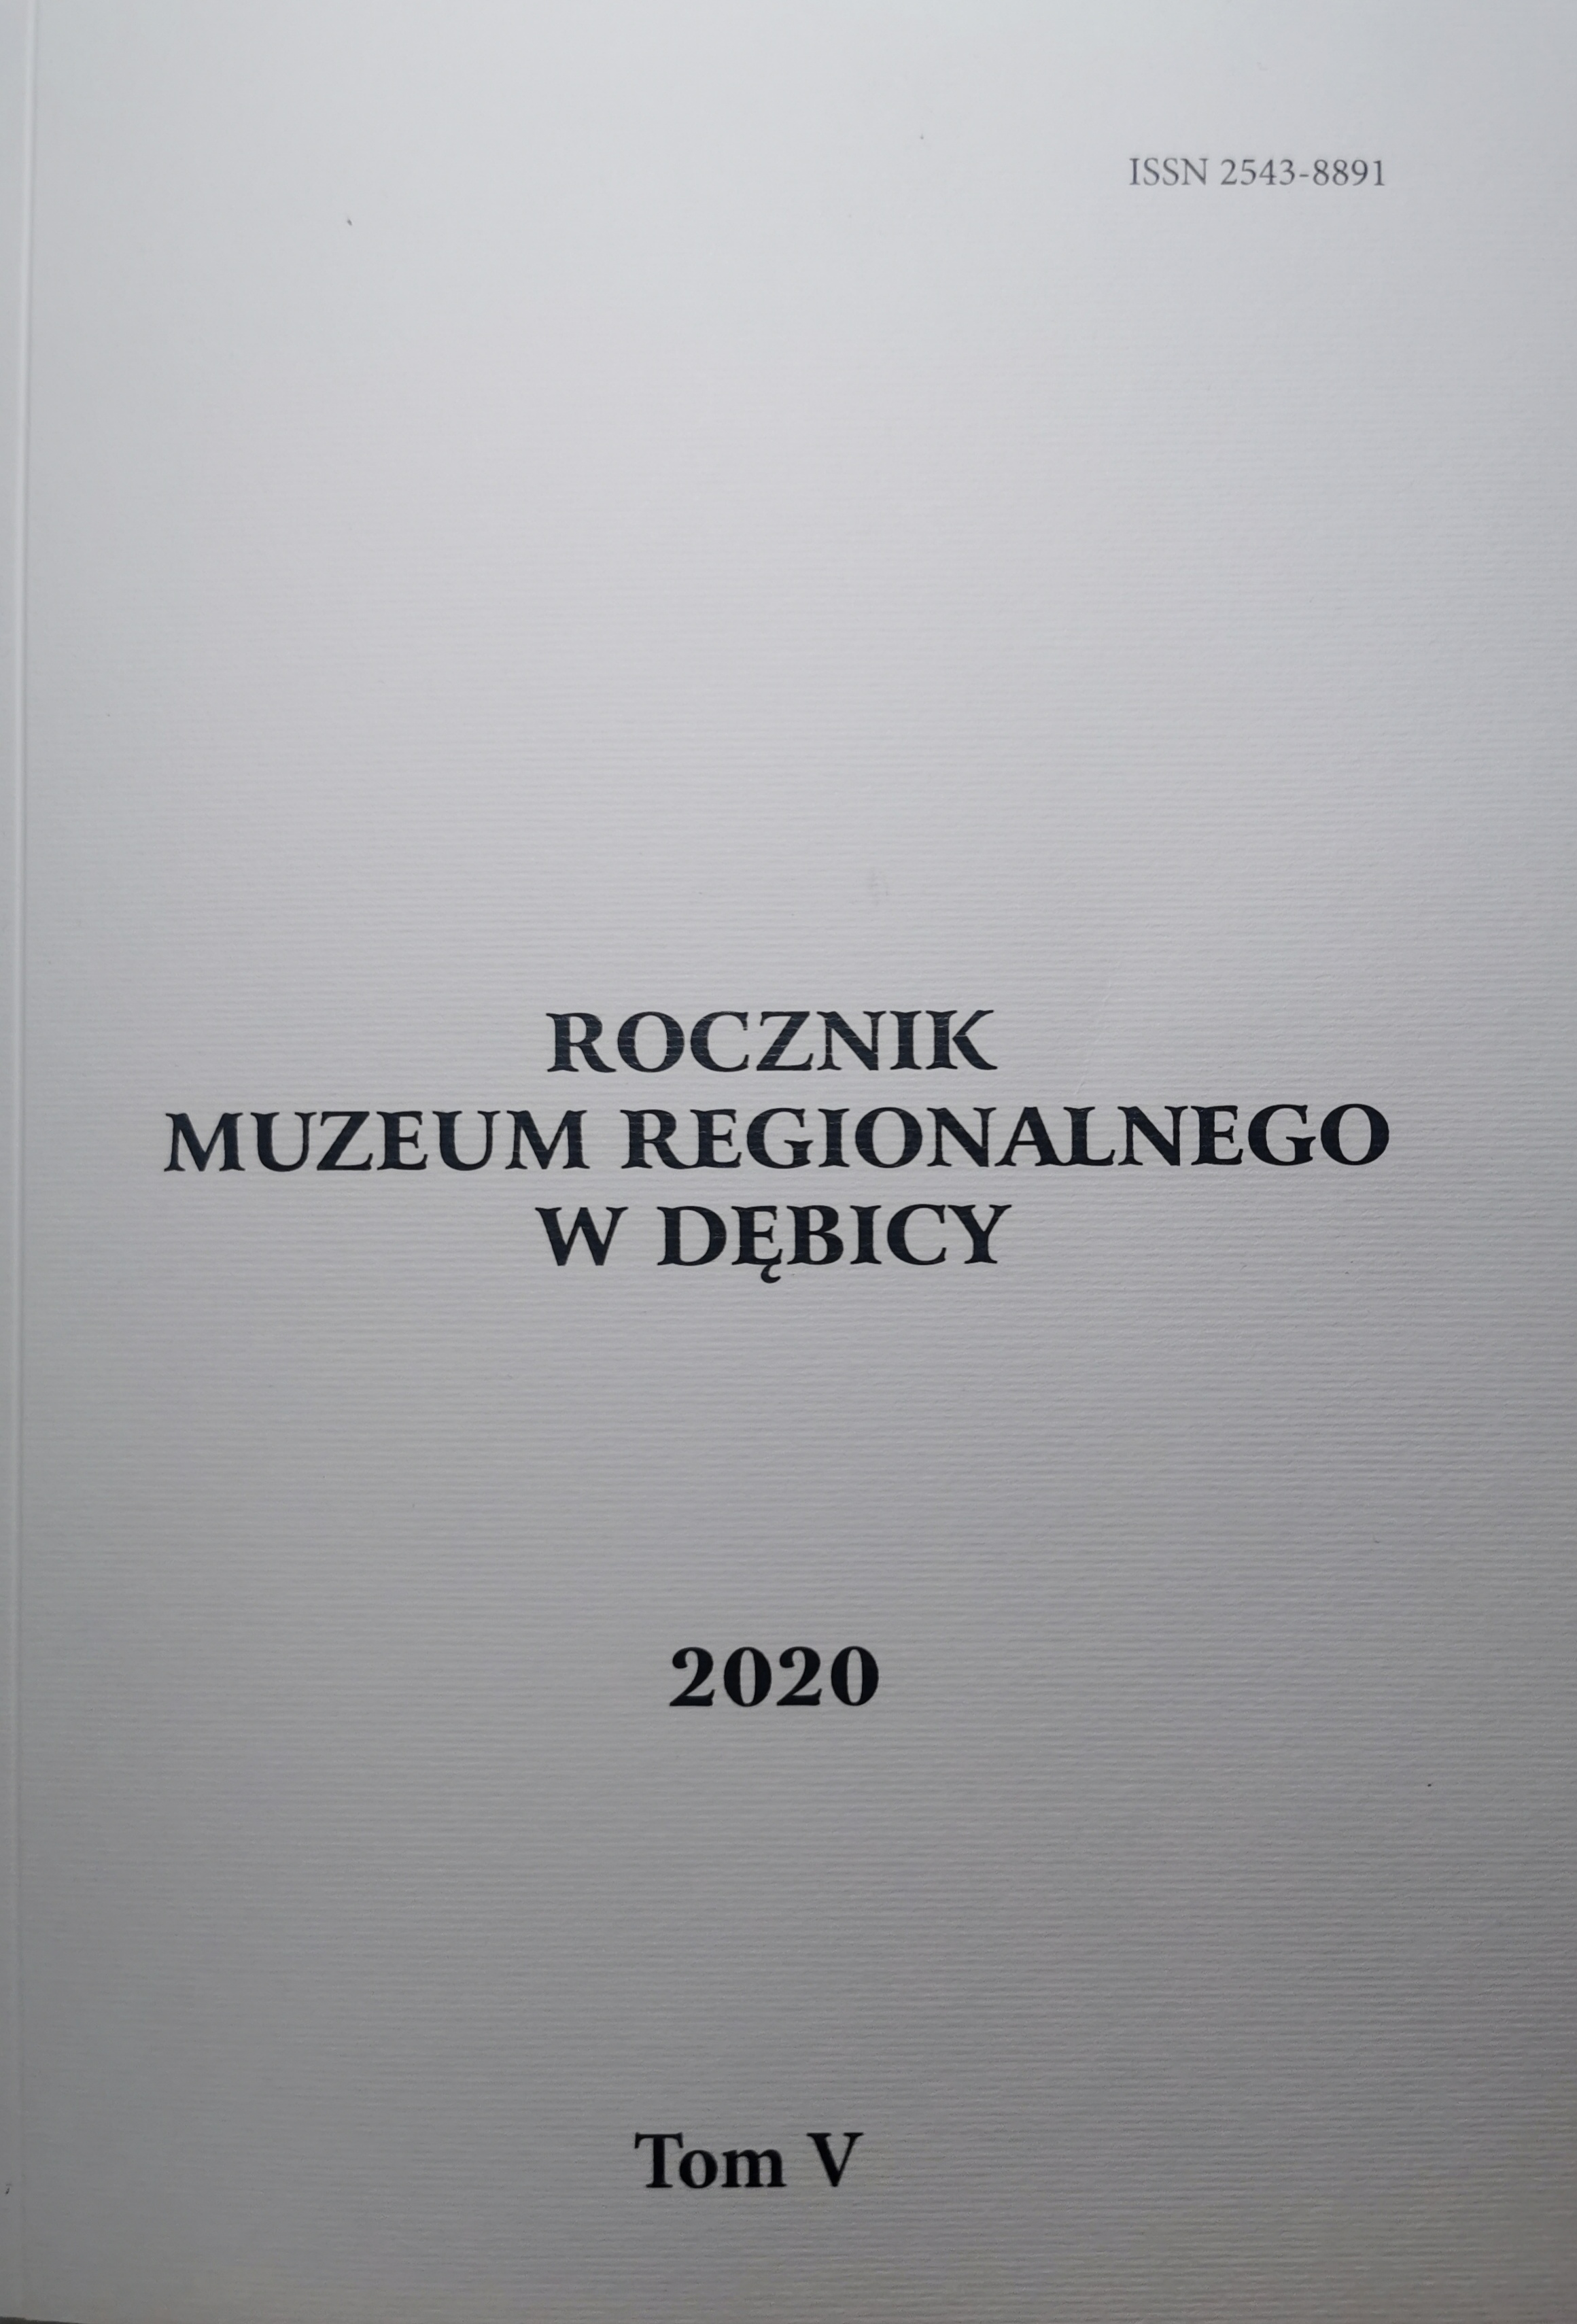 Rocznik Muzeum Regionalnego w Dębicy 2020 TOM V